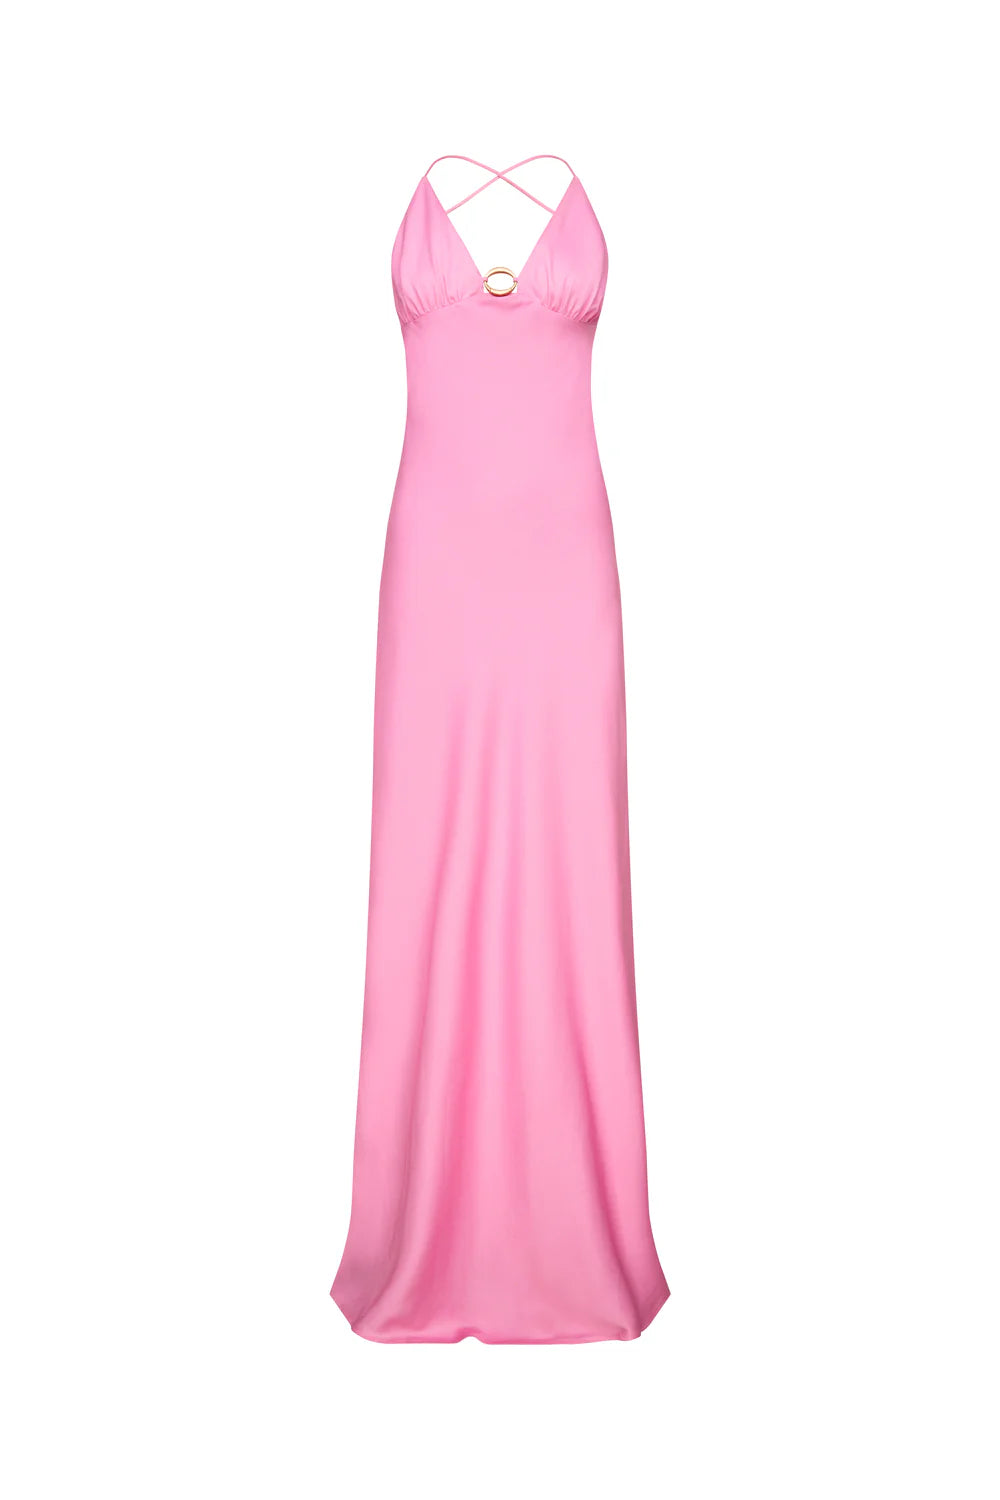 Liquid Asset Slip Dress (Pink)